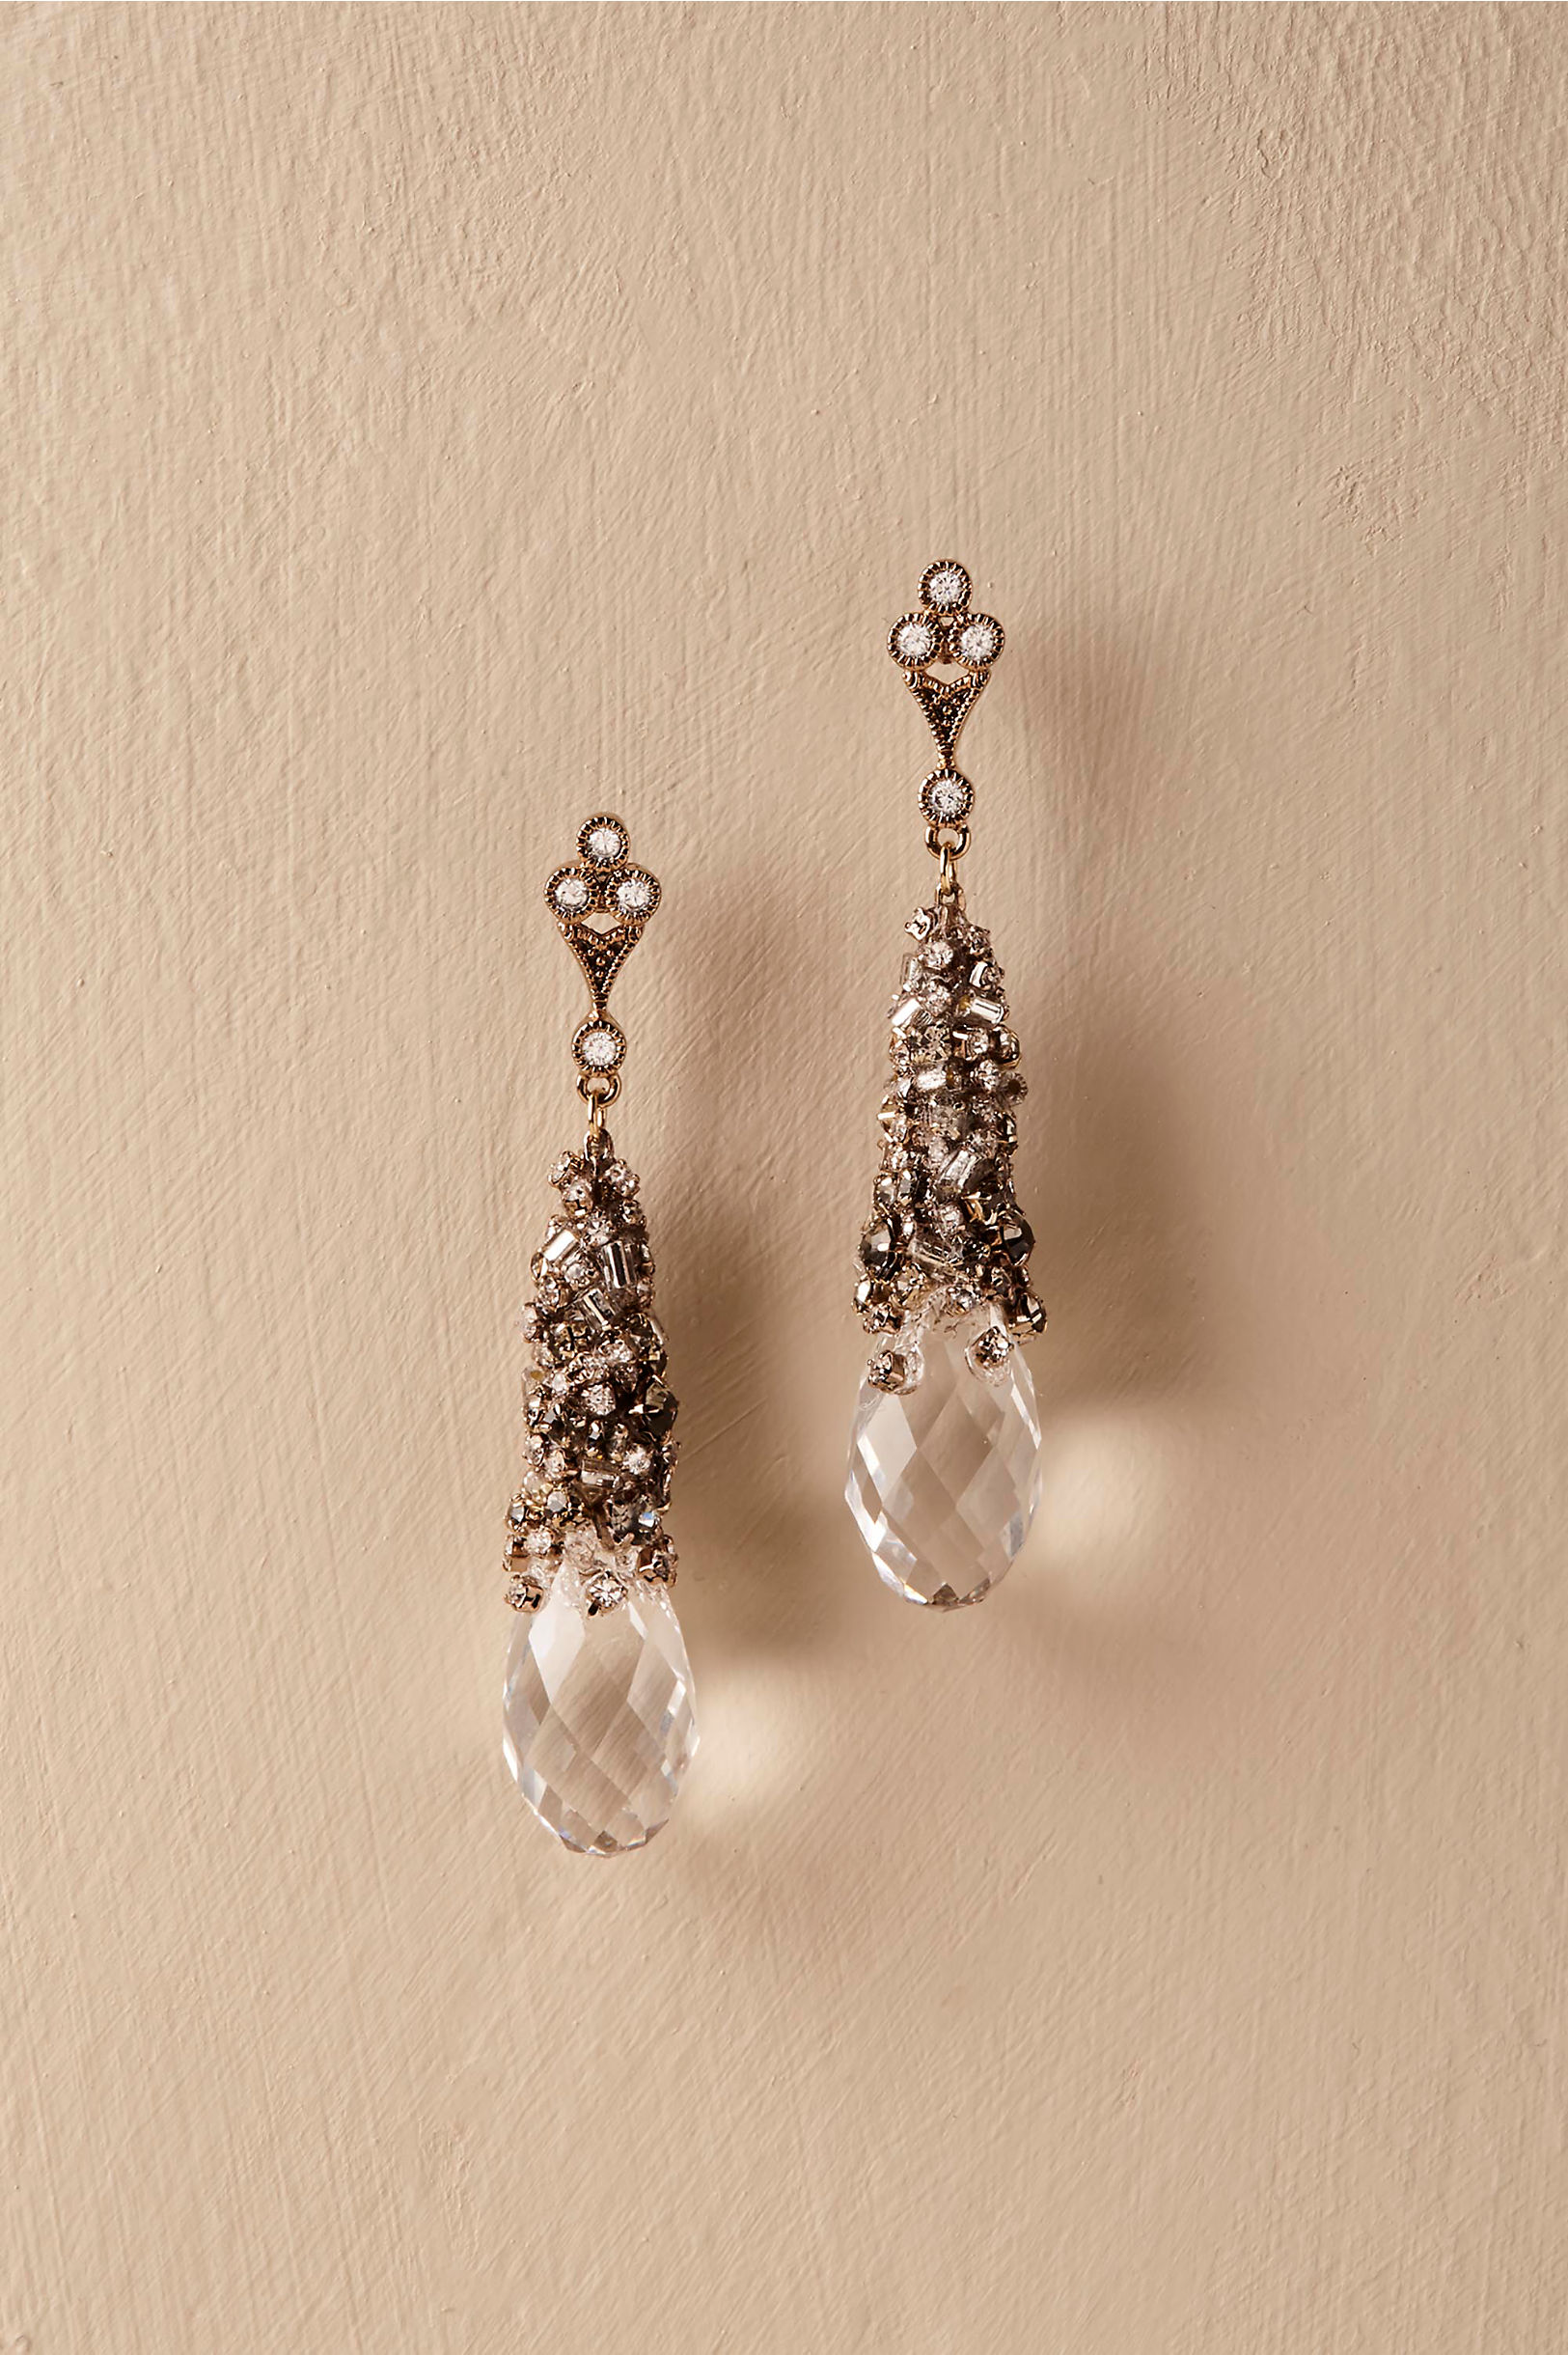 Chiara Crystal Earrings in Sale | BHLDN